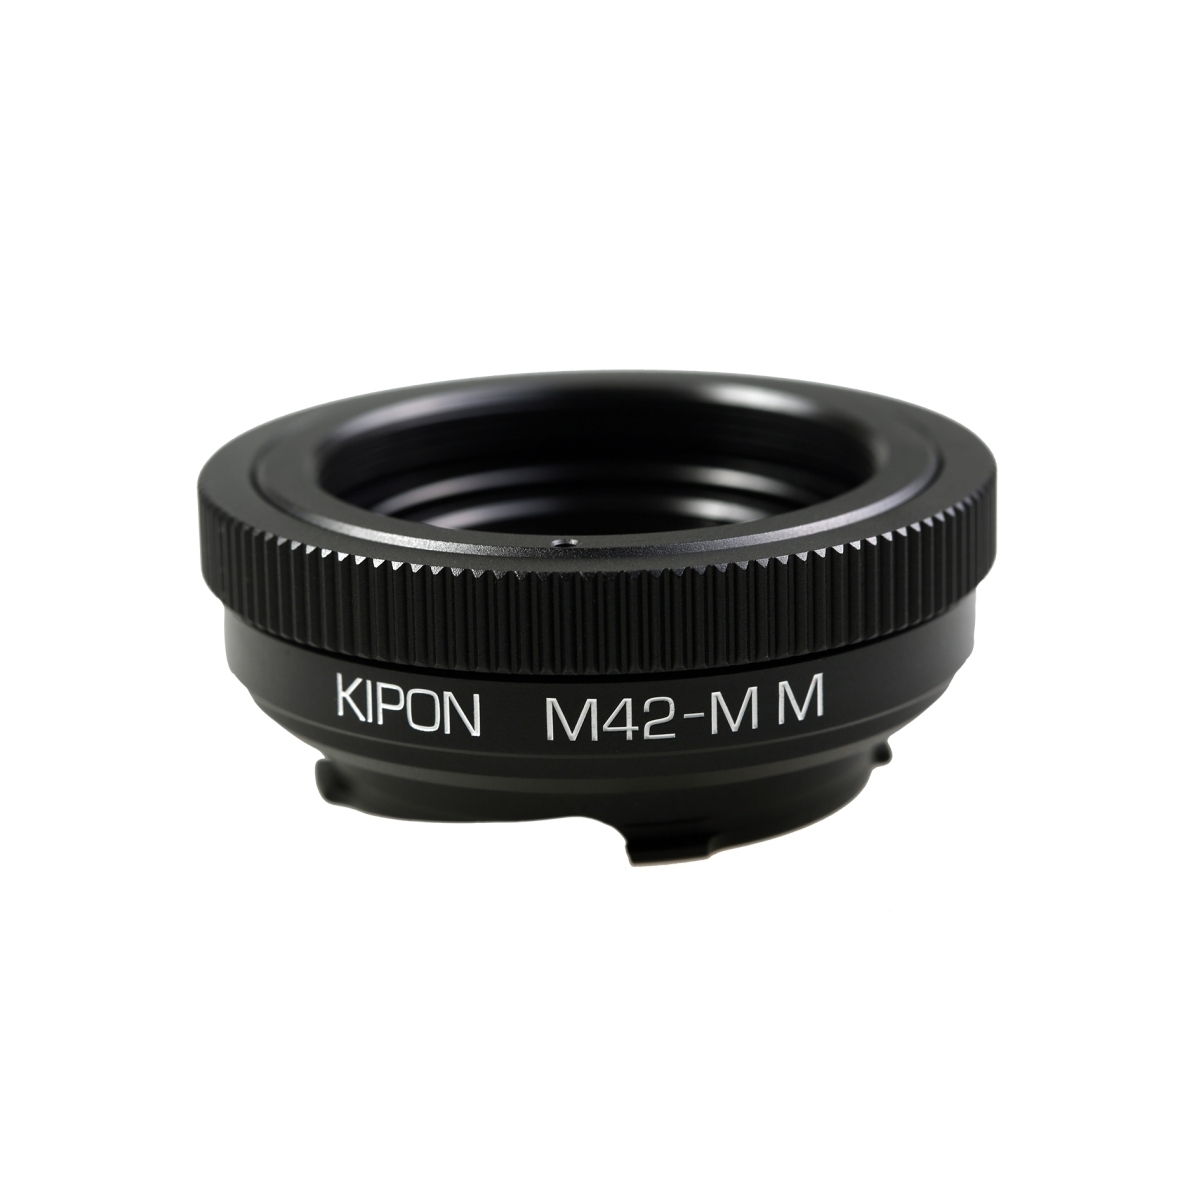 Kipon Adapter M42 to Leica M